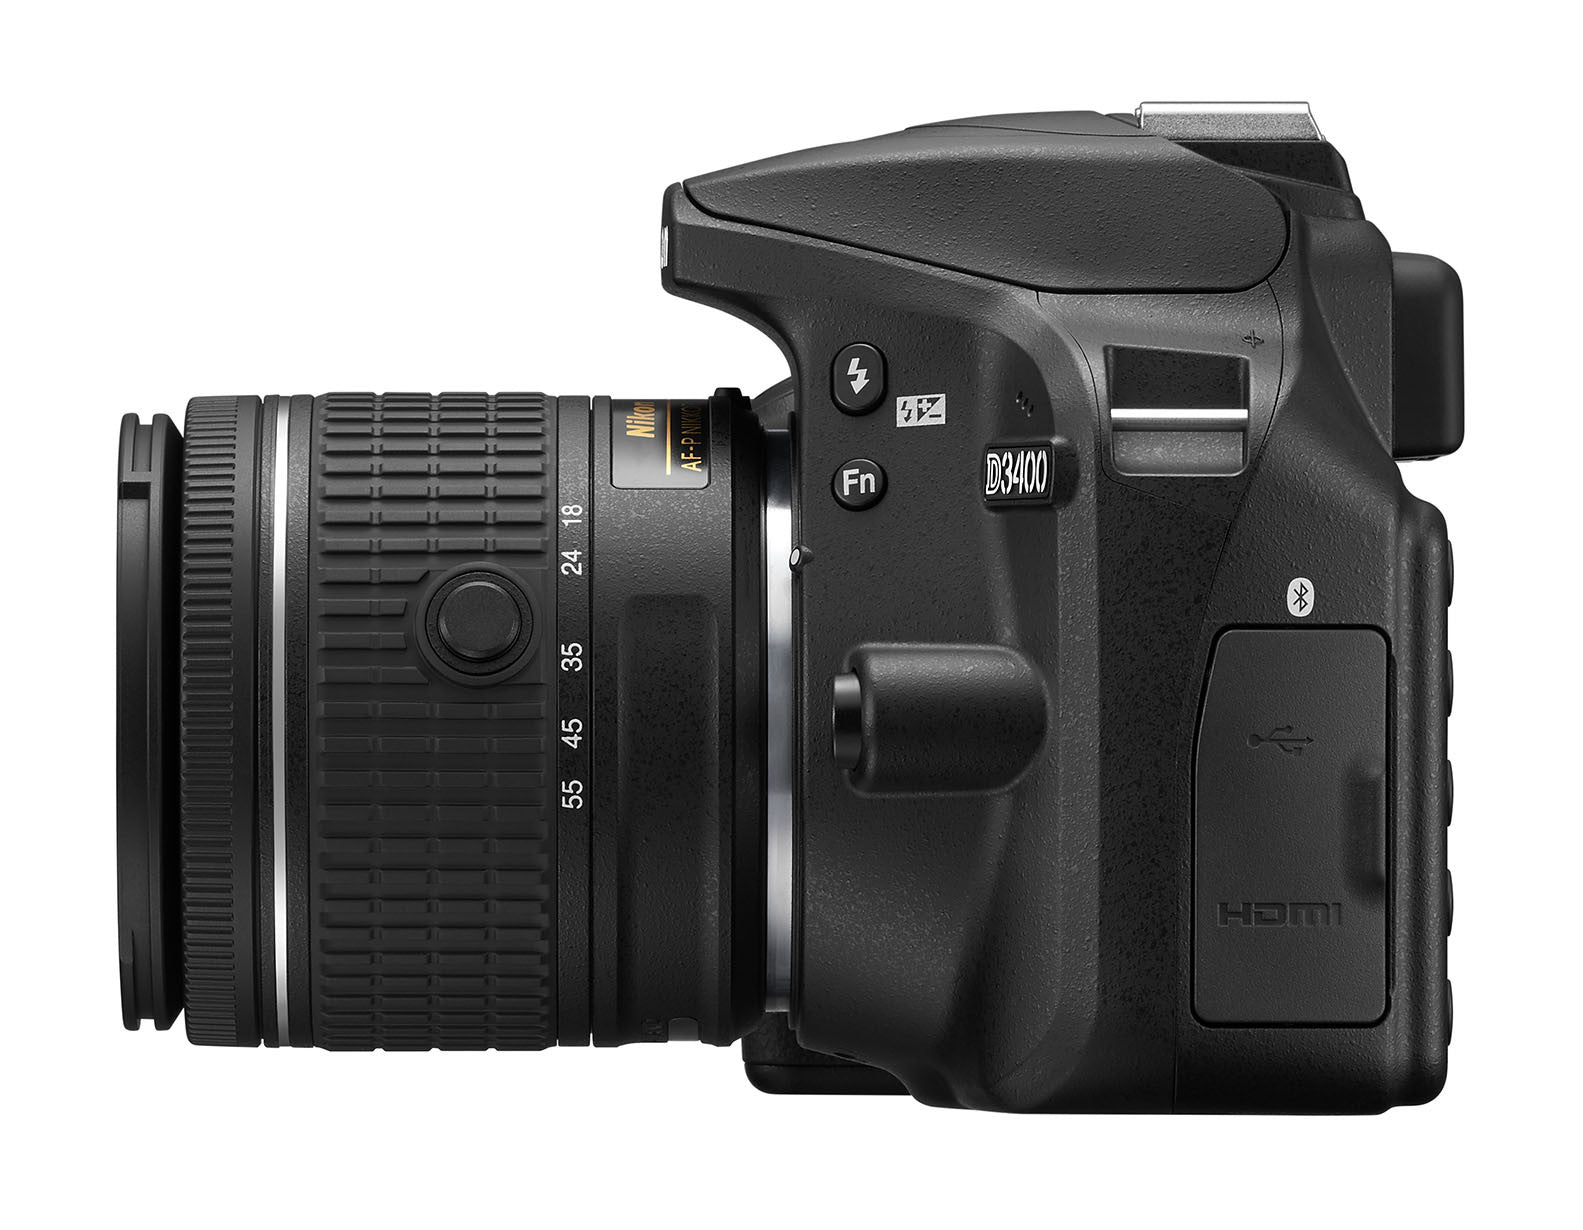 Nikon D3400 DX-format Digital SLR Kit w/ 18-55mm DX G VR Zoom Lens Black, camera dslr cameras, Nikon - Pictureline  - 5